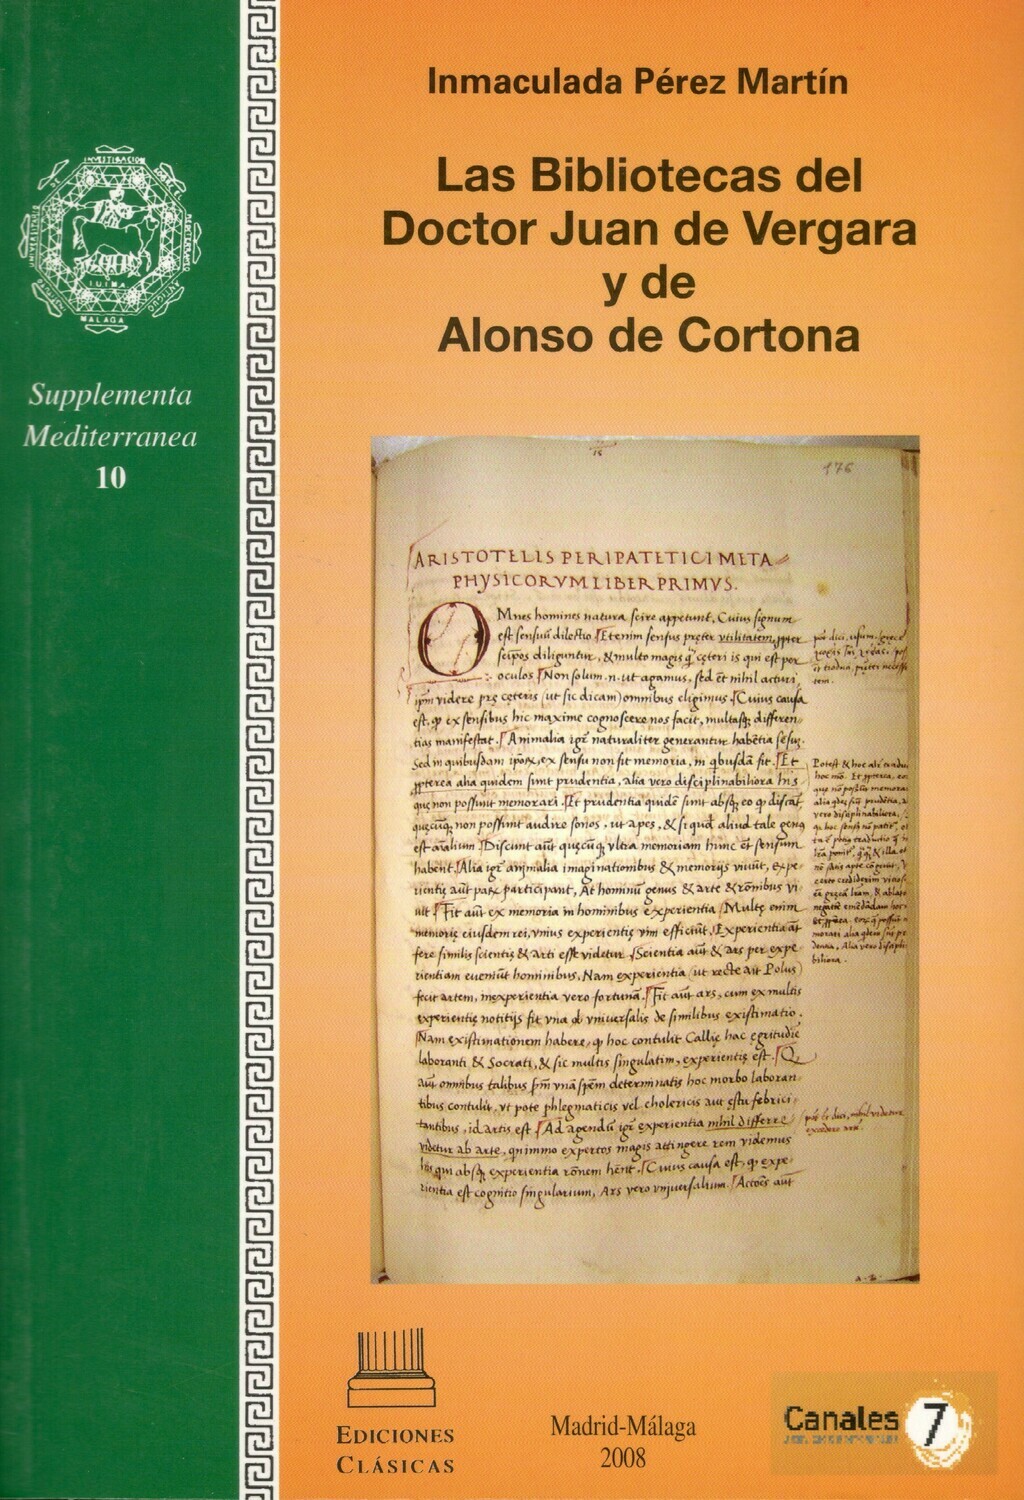 LAS BIBLIOTECAS DEL DOCTOR JUAN DE VERGARA Y ALONSO DE CORTONA